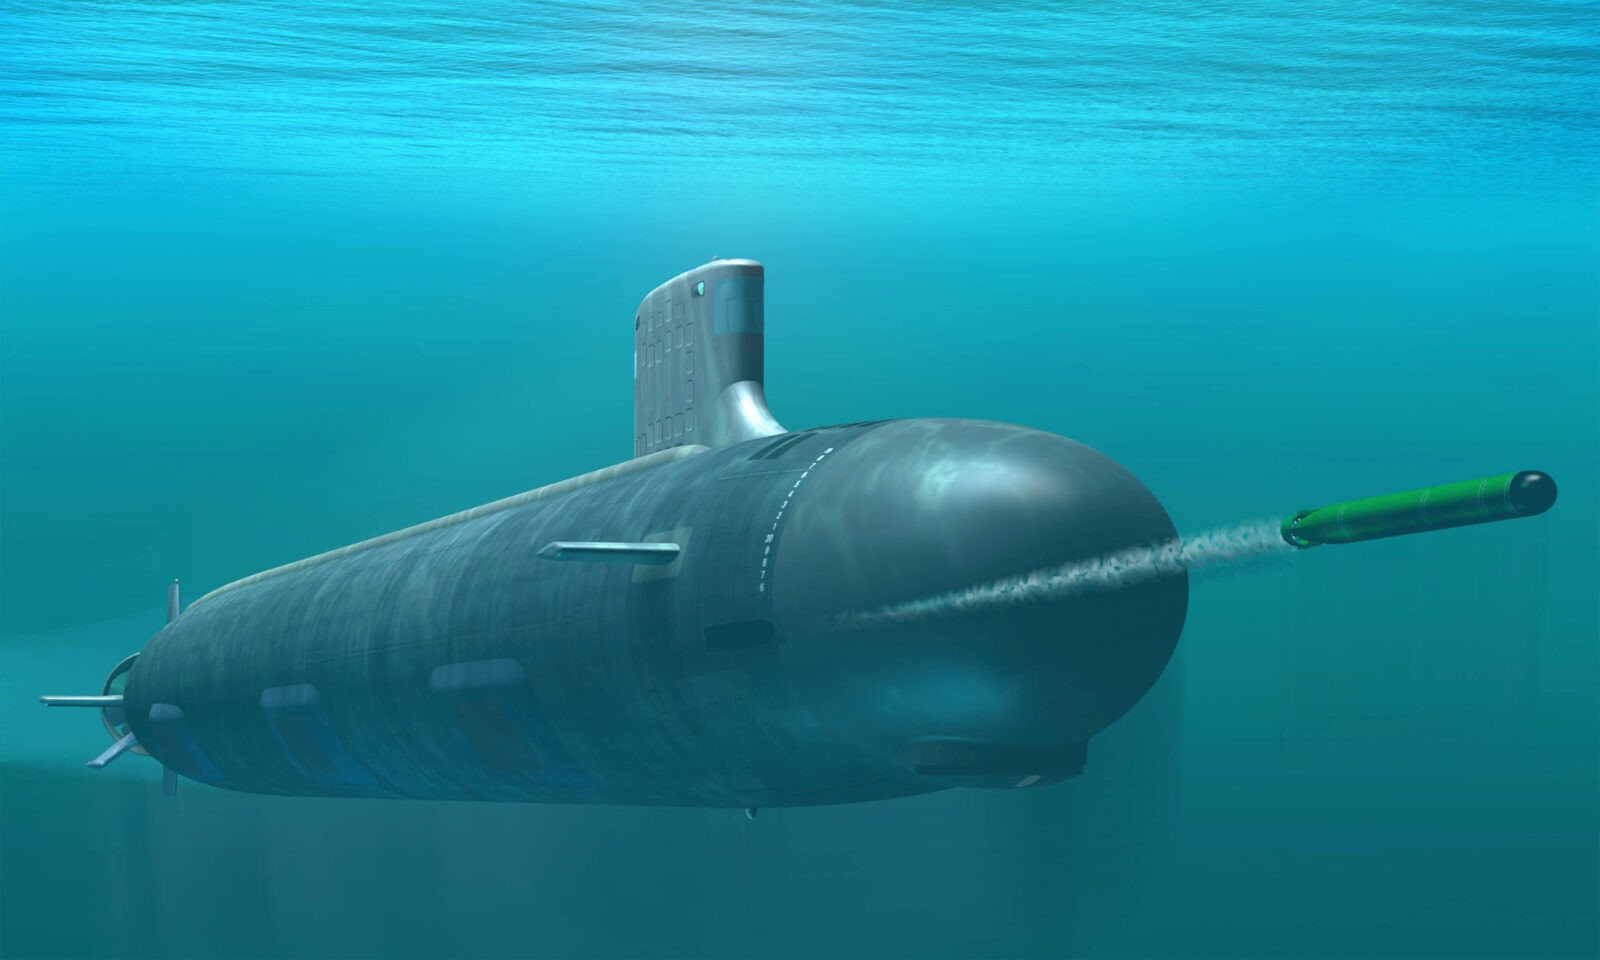 Bez tych okrętów siły podwodne USA nie istnieją. Są niczym szwajcarskie scyzoryki w działaniach wojennych